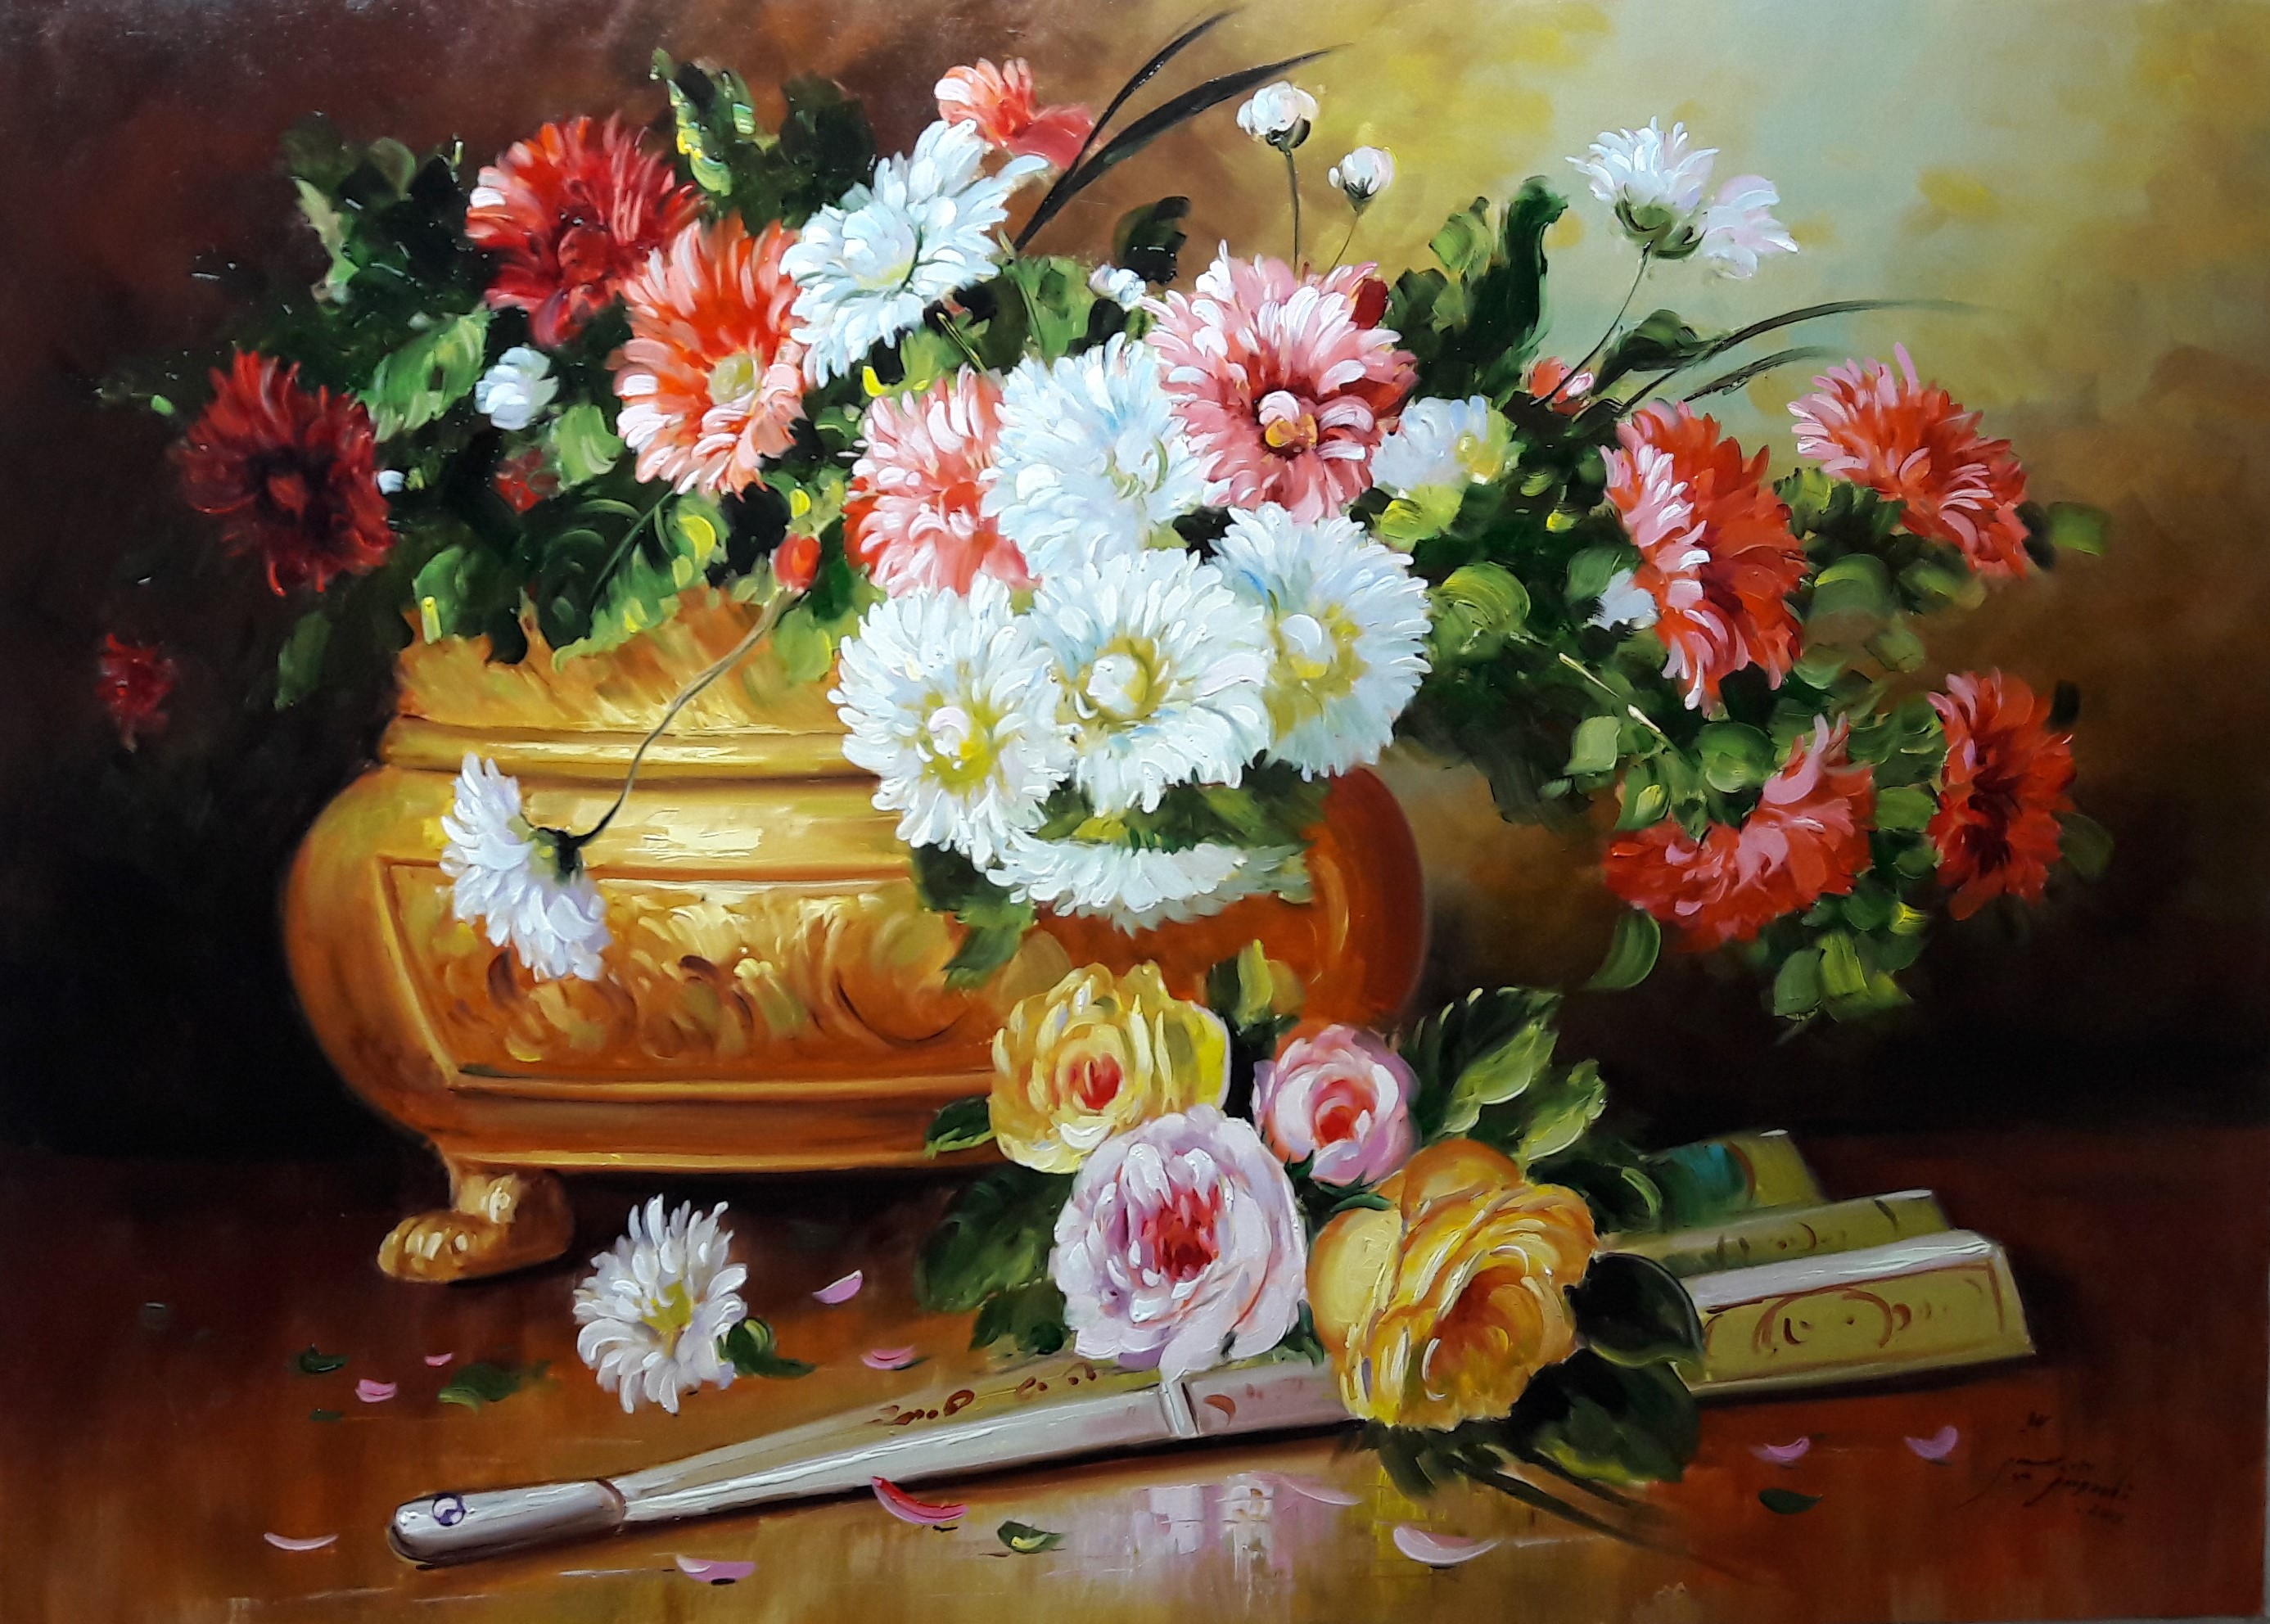 مدل نقاشی رنگ روغن گل و گلدان